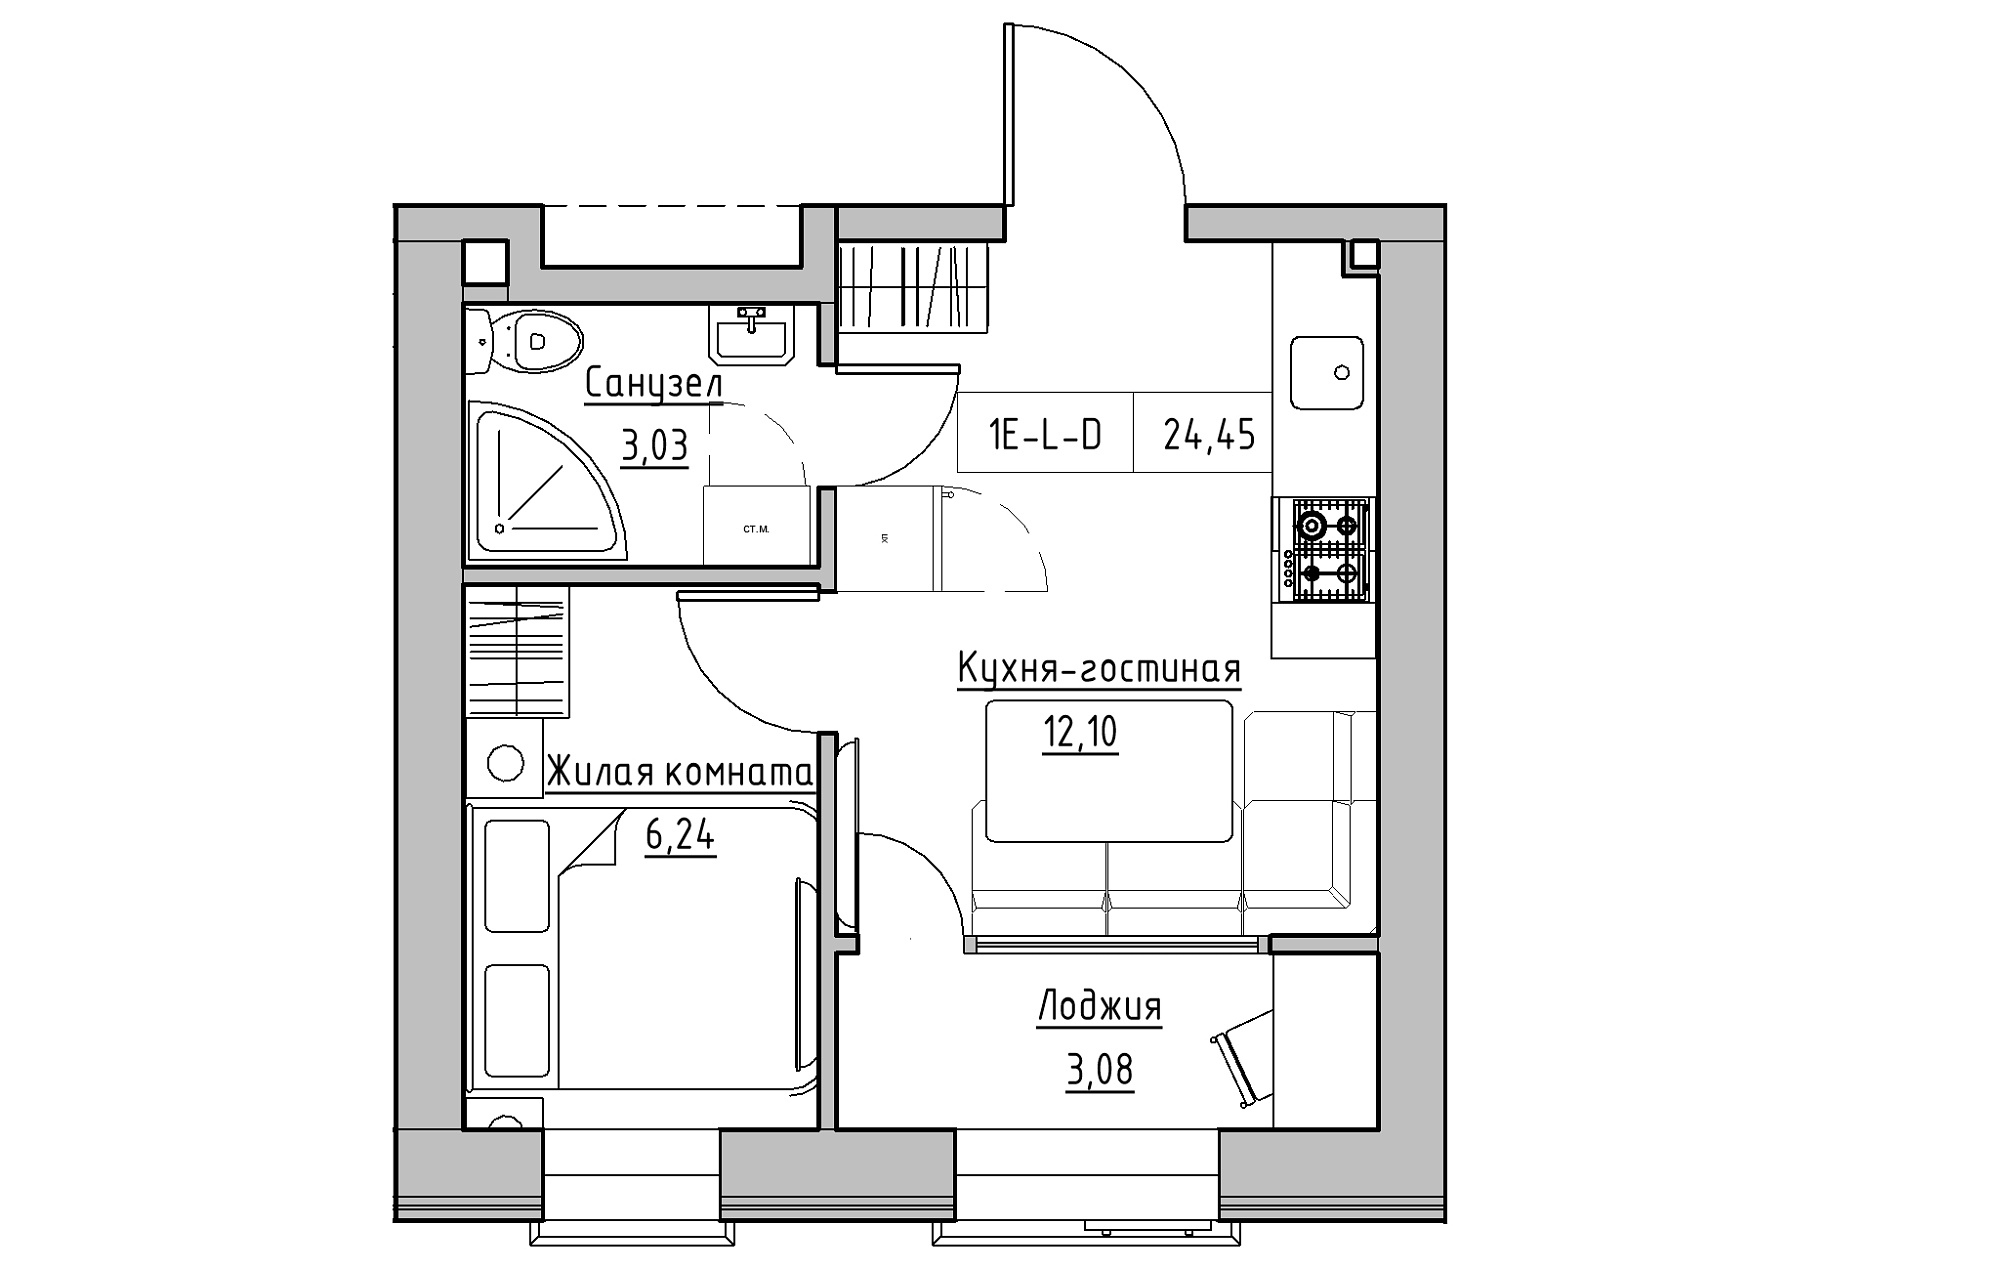 Планування 1-к квартира площею 24.45м2, KS-018-01/0002.